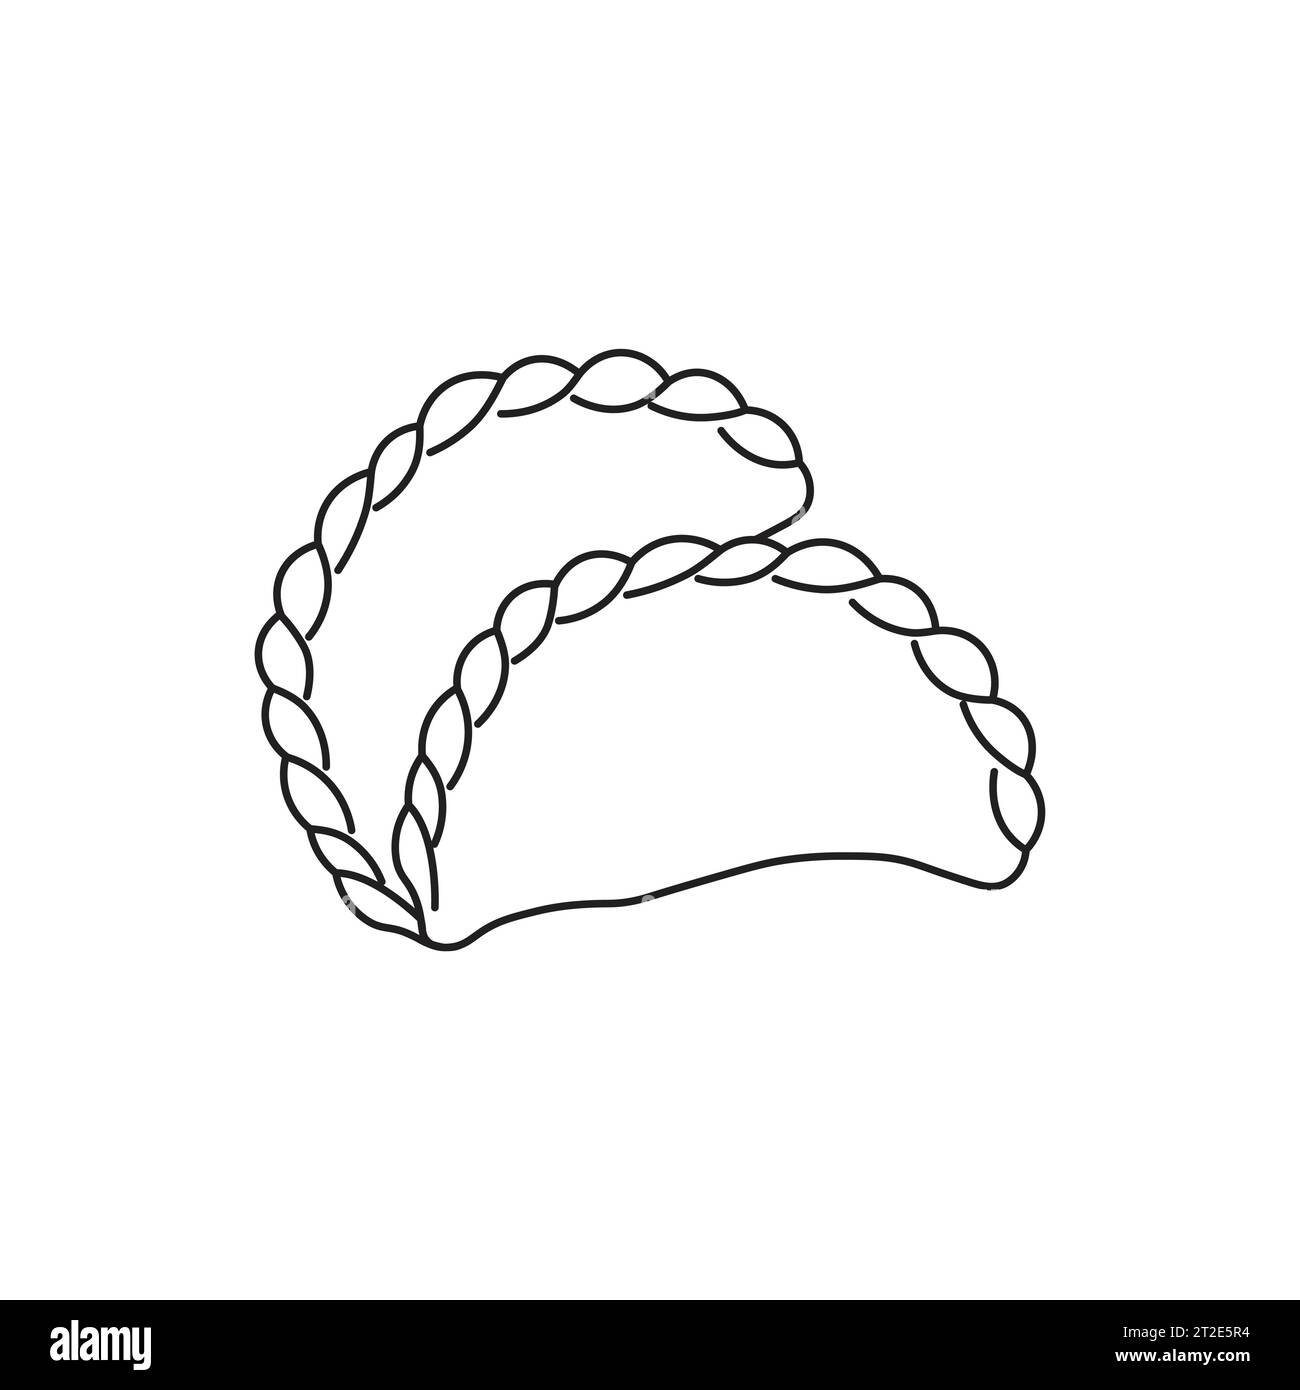 Dumpling-Symbol für Food-Apps und Websites. Isolieren auf weißem Hintergrund. Vektorillustration Stock Vektor